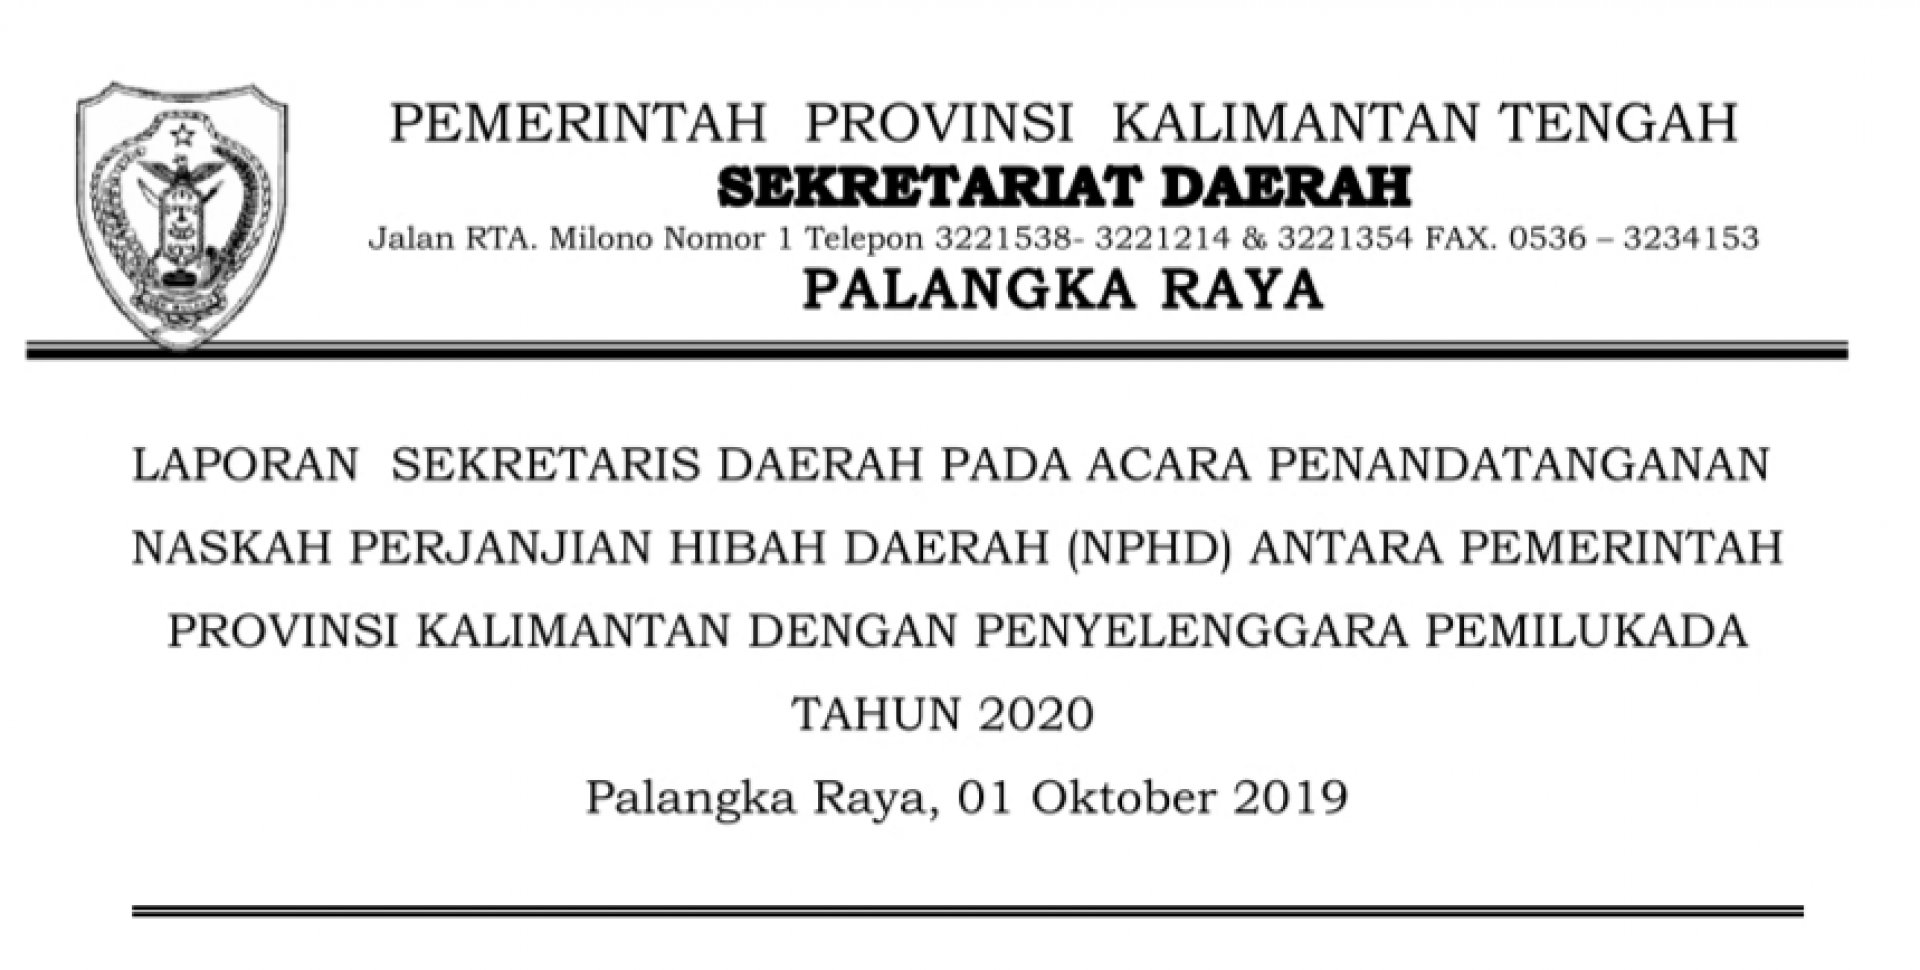 Laporan Sekretaris Daerah pada Acara Penandatanganan Naskah Perjanjian Hibah Daerah Antara Pemerintah Provinsi Kalimantan Tengah dengan Penyelenggara Pemilukada Tahun 2020